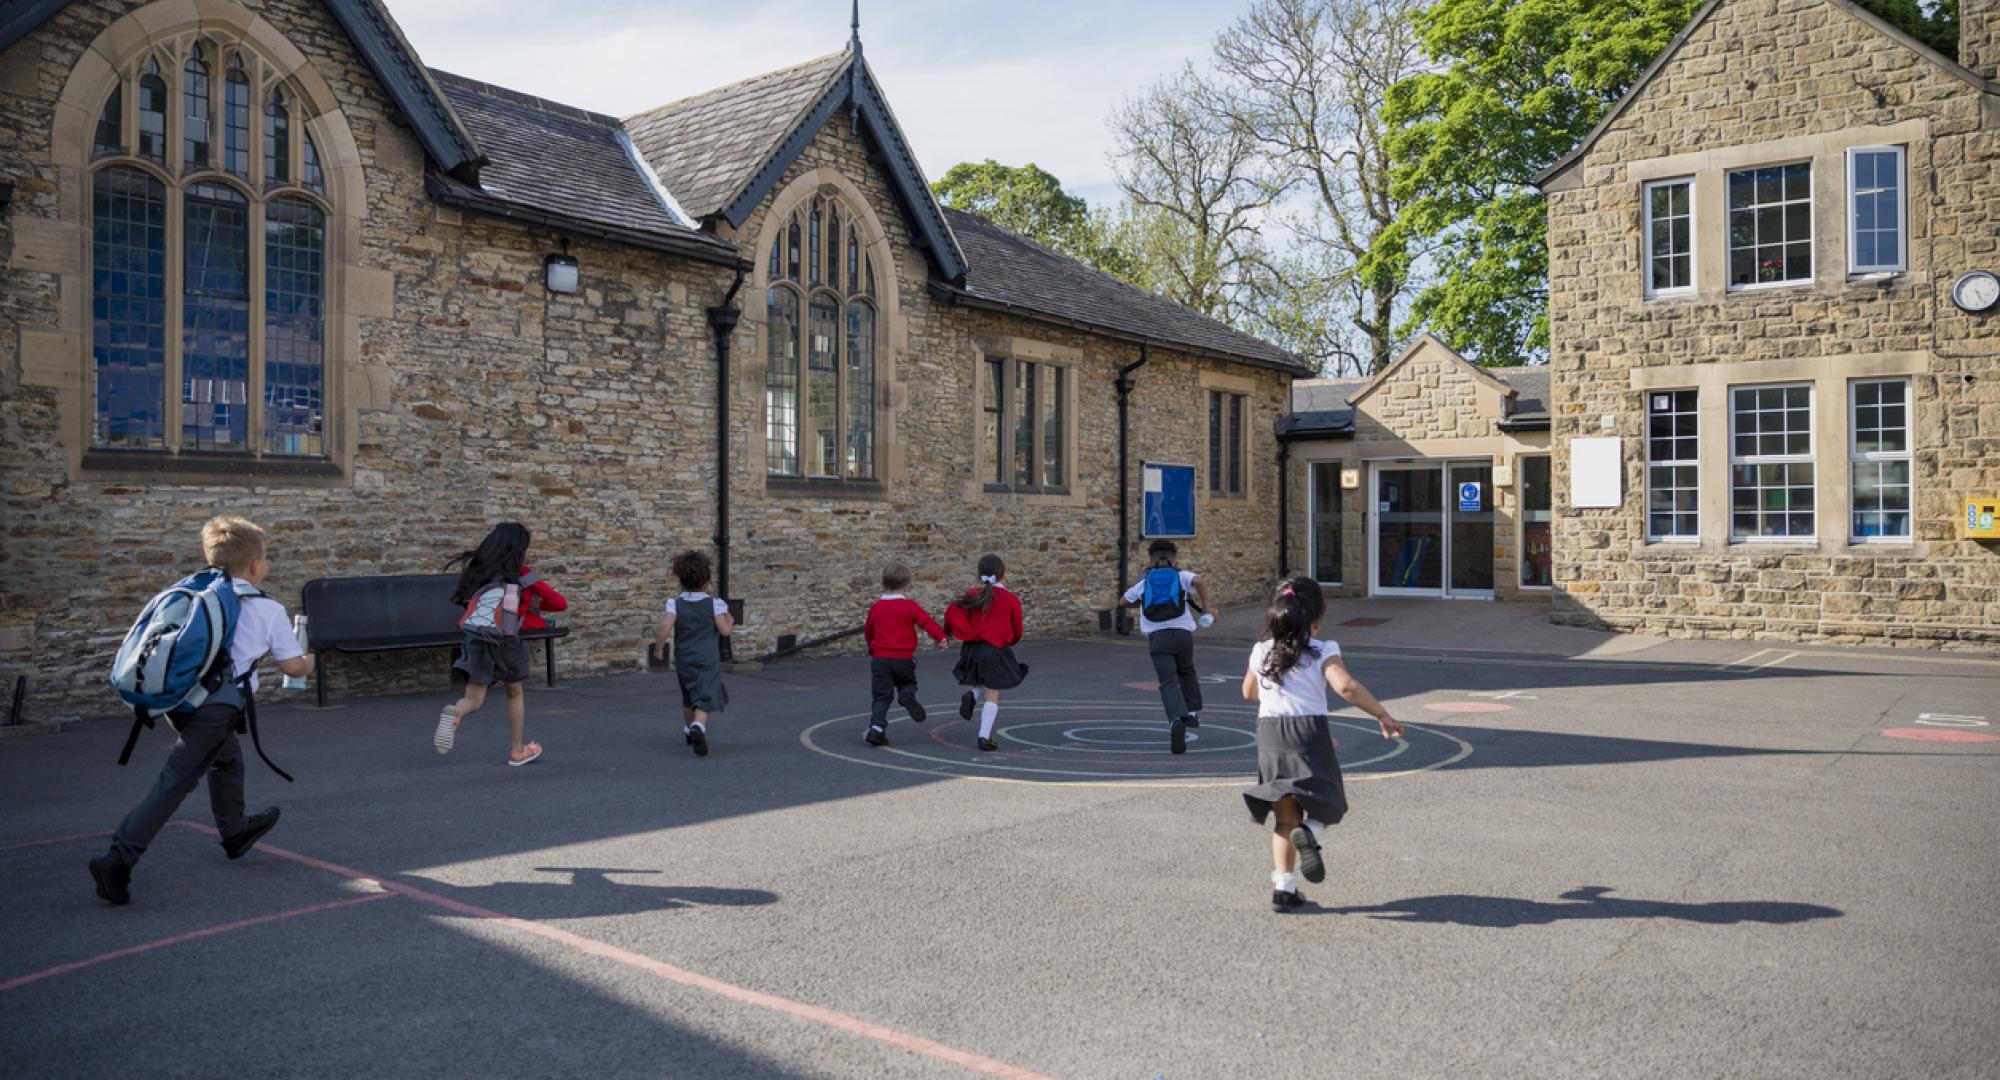 Children running through a playground of a primary school